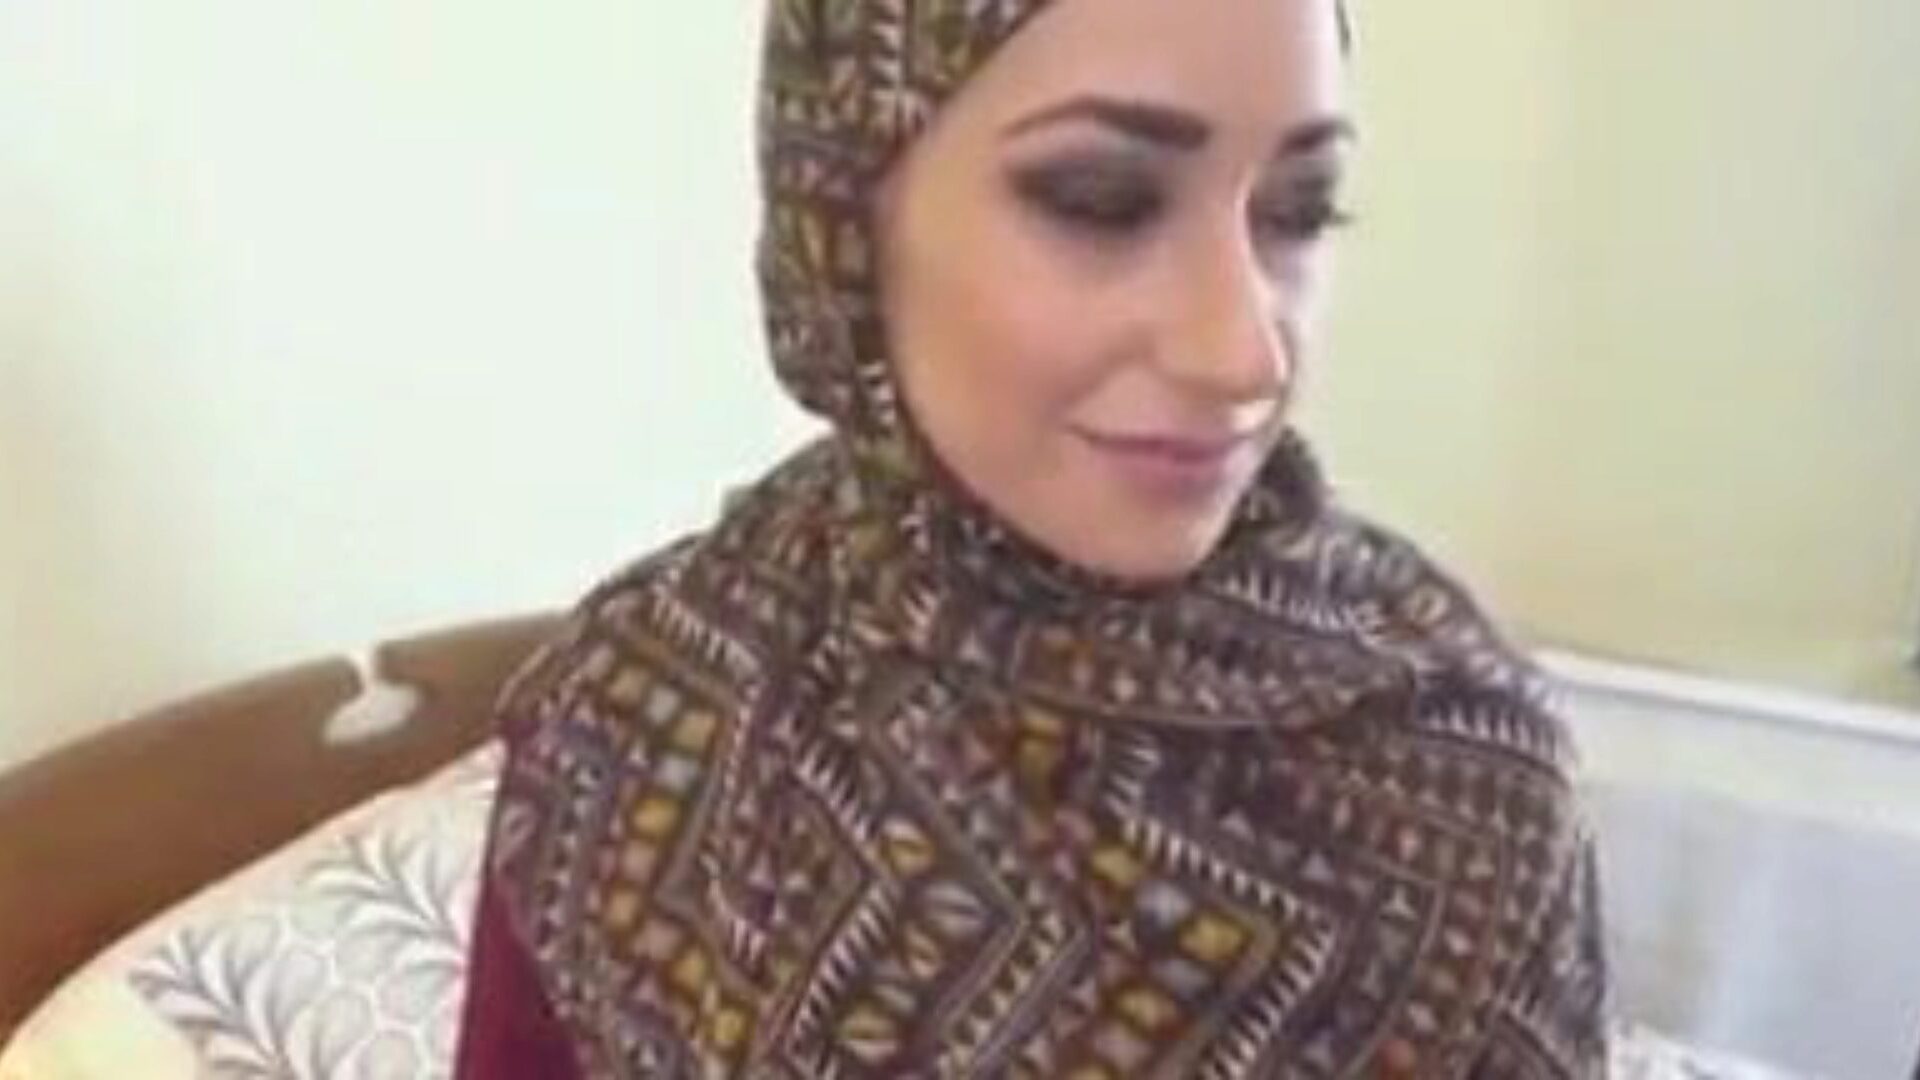 putain de fille musulmane hijab, vidéo porno tube musulman gratuit regarder le clip de baise fille hijab musulmane sur xhamster, le plus grand site Web de tube fuckfest avec des tonnes de tube arabe musulman gratuit et de clips porno hijab youtube